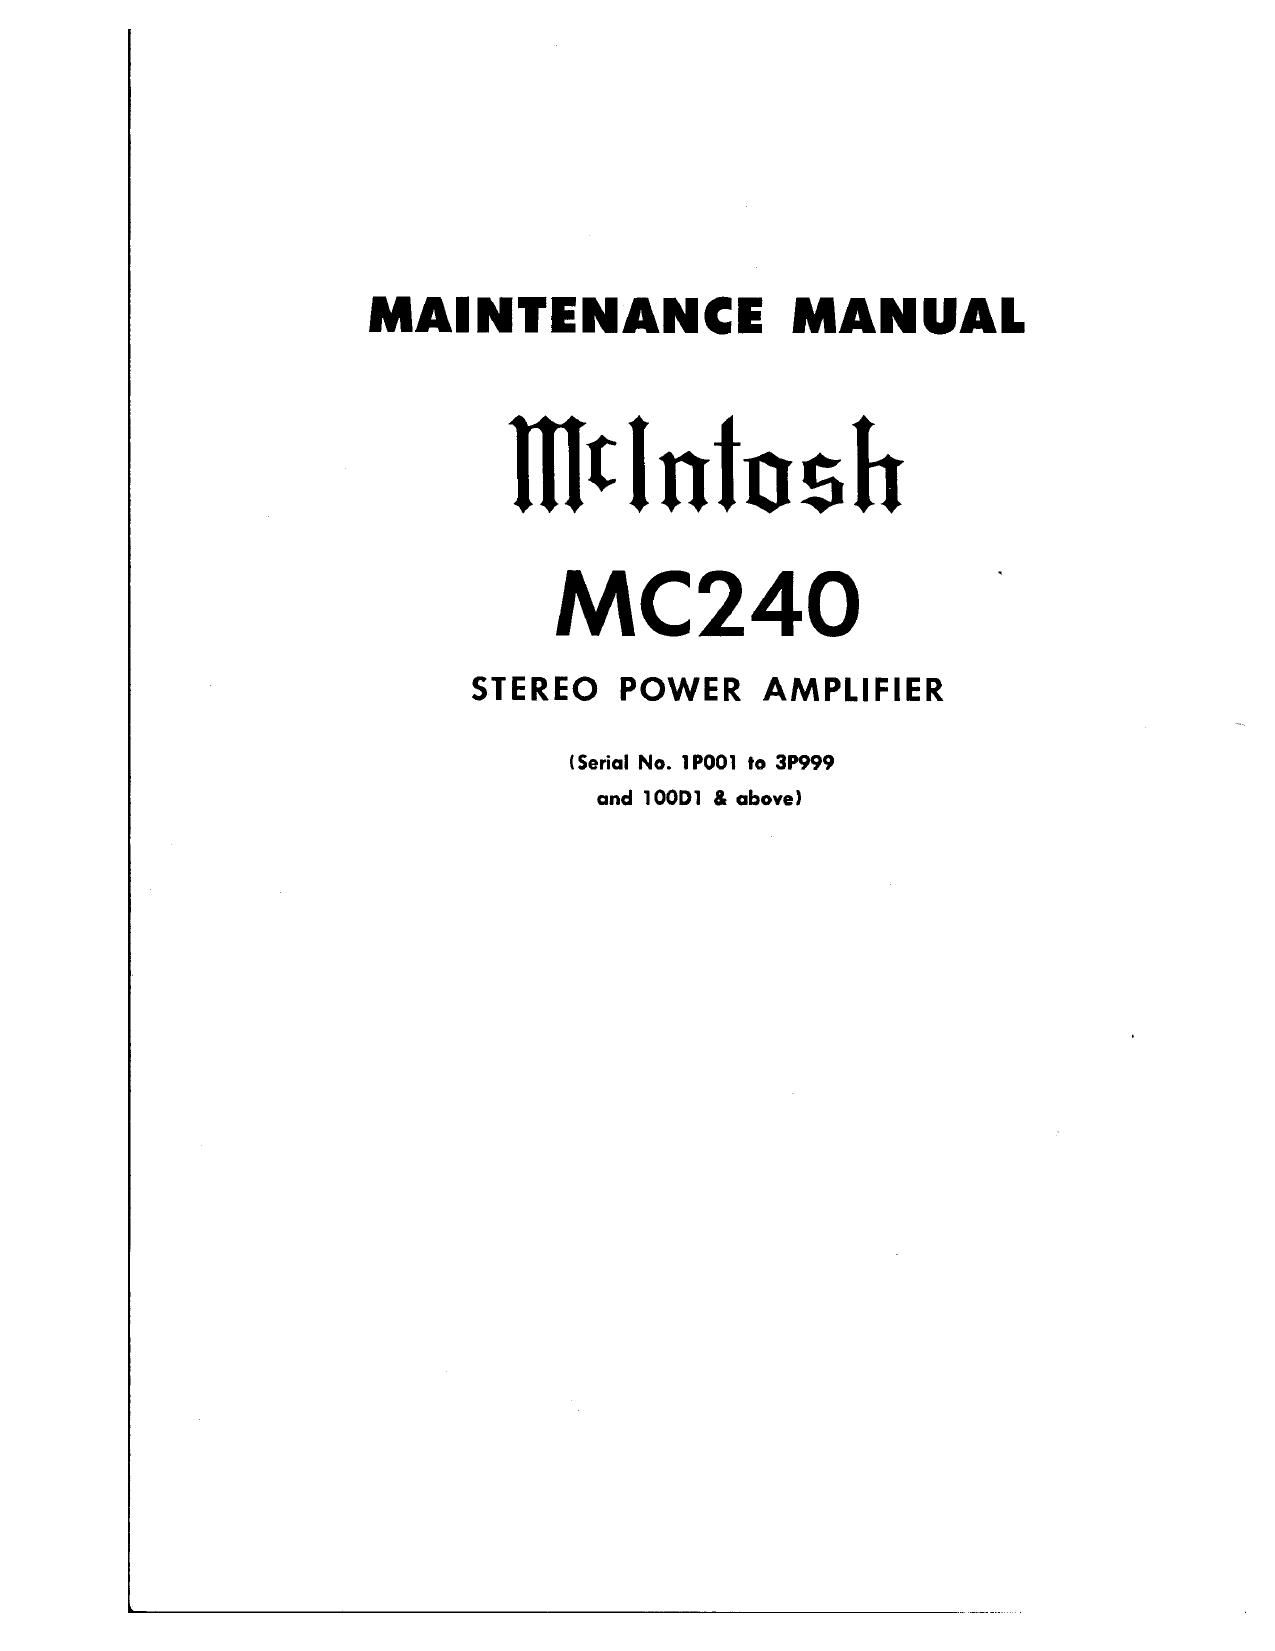 McIntosh MC 240 Service Manual